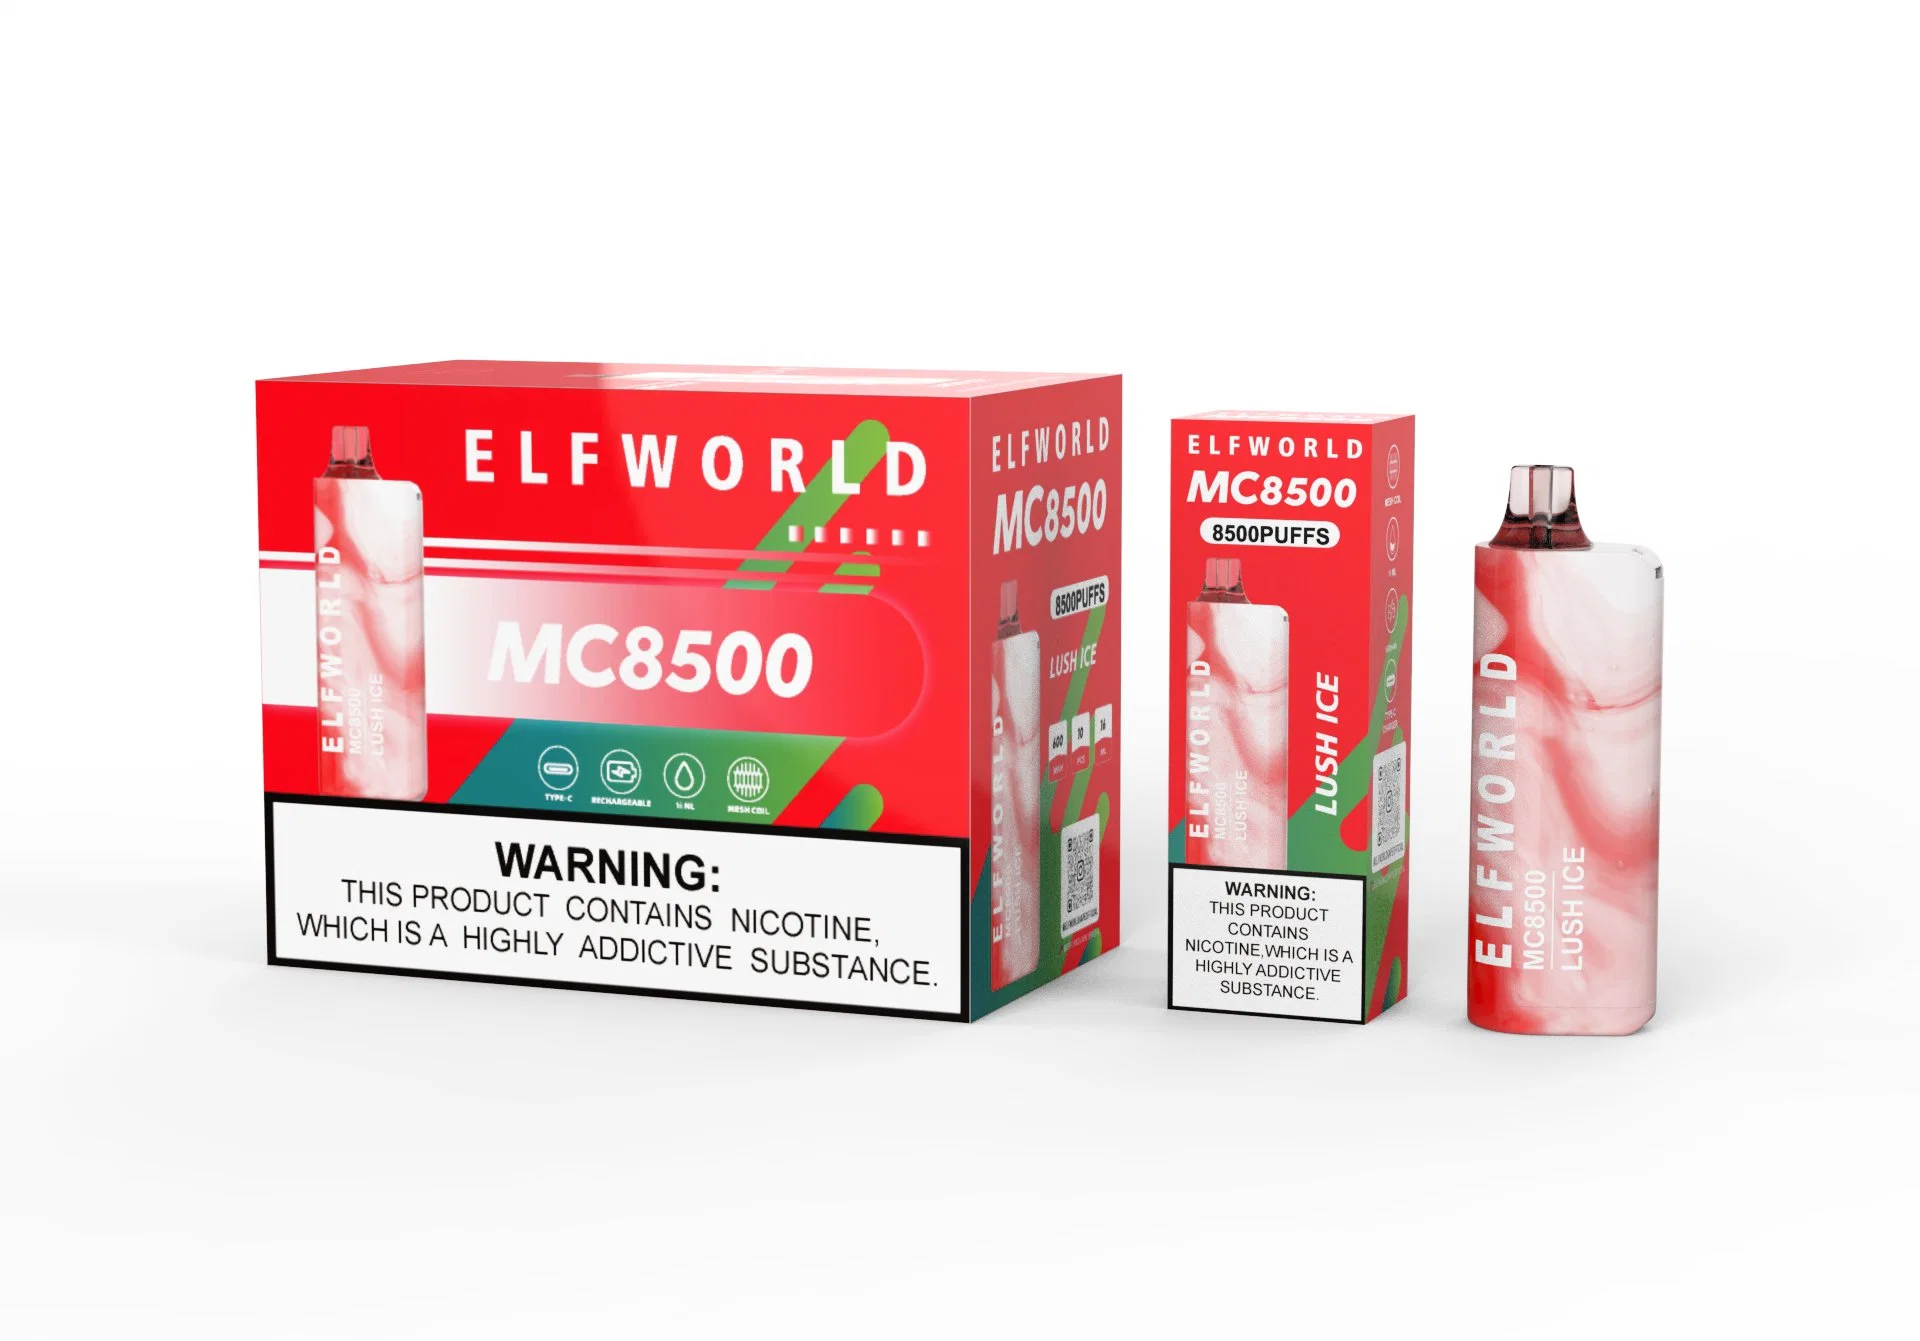 Compre Elfworld Mc 8500 dispositivo de Pape descartável Elf World original 8500 Puffs descartáveis Pape descartável tabagismo Pape Atacado I Mc. De Pape Wape